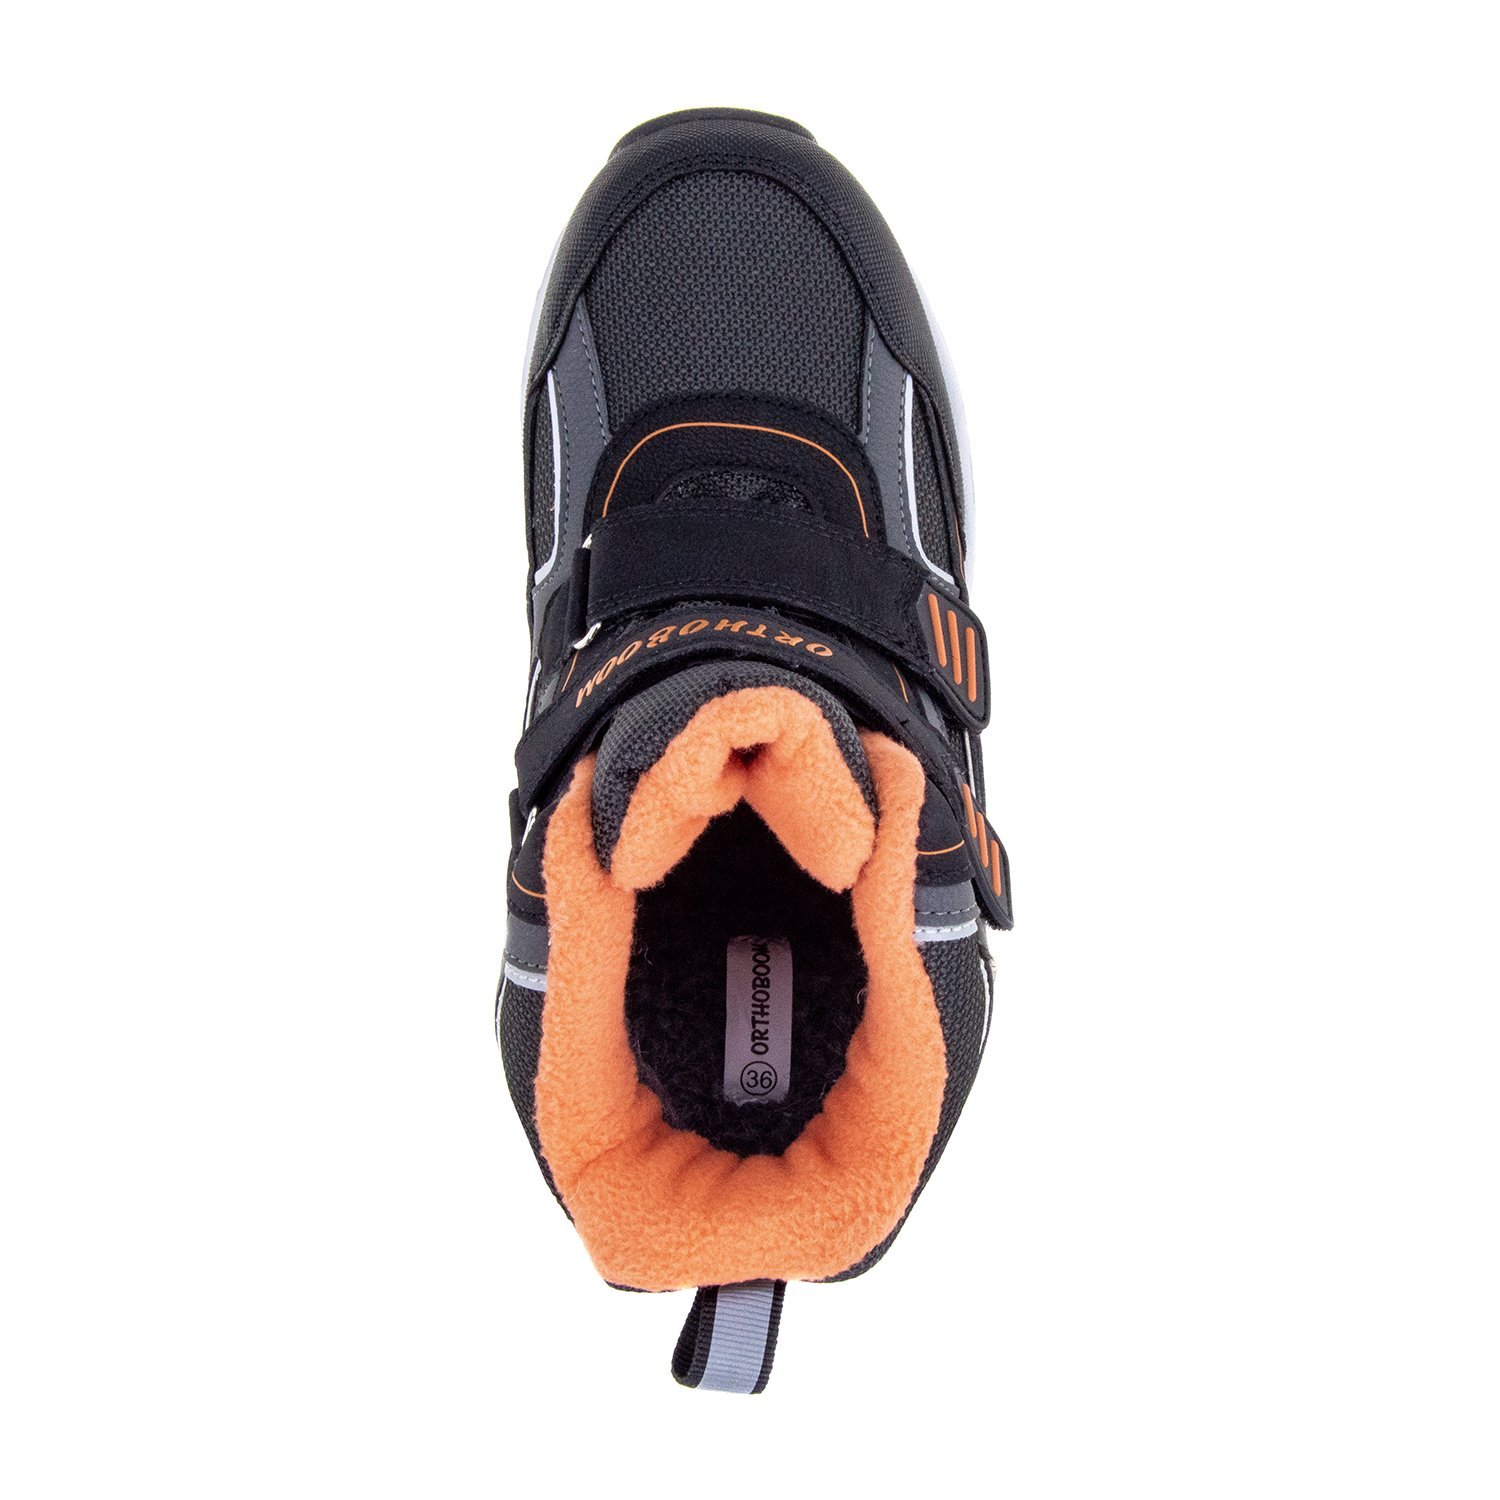 Детские ботинки ORTHOBOOM 80123-04 черный с оранжевым